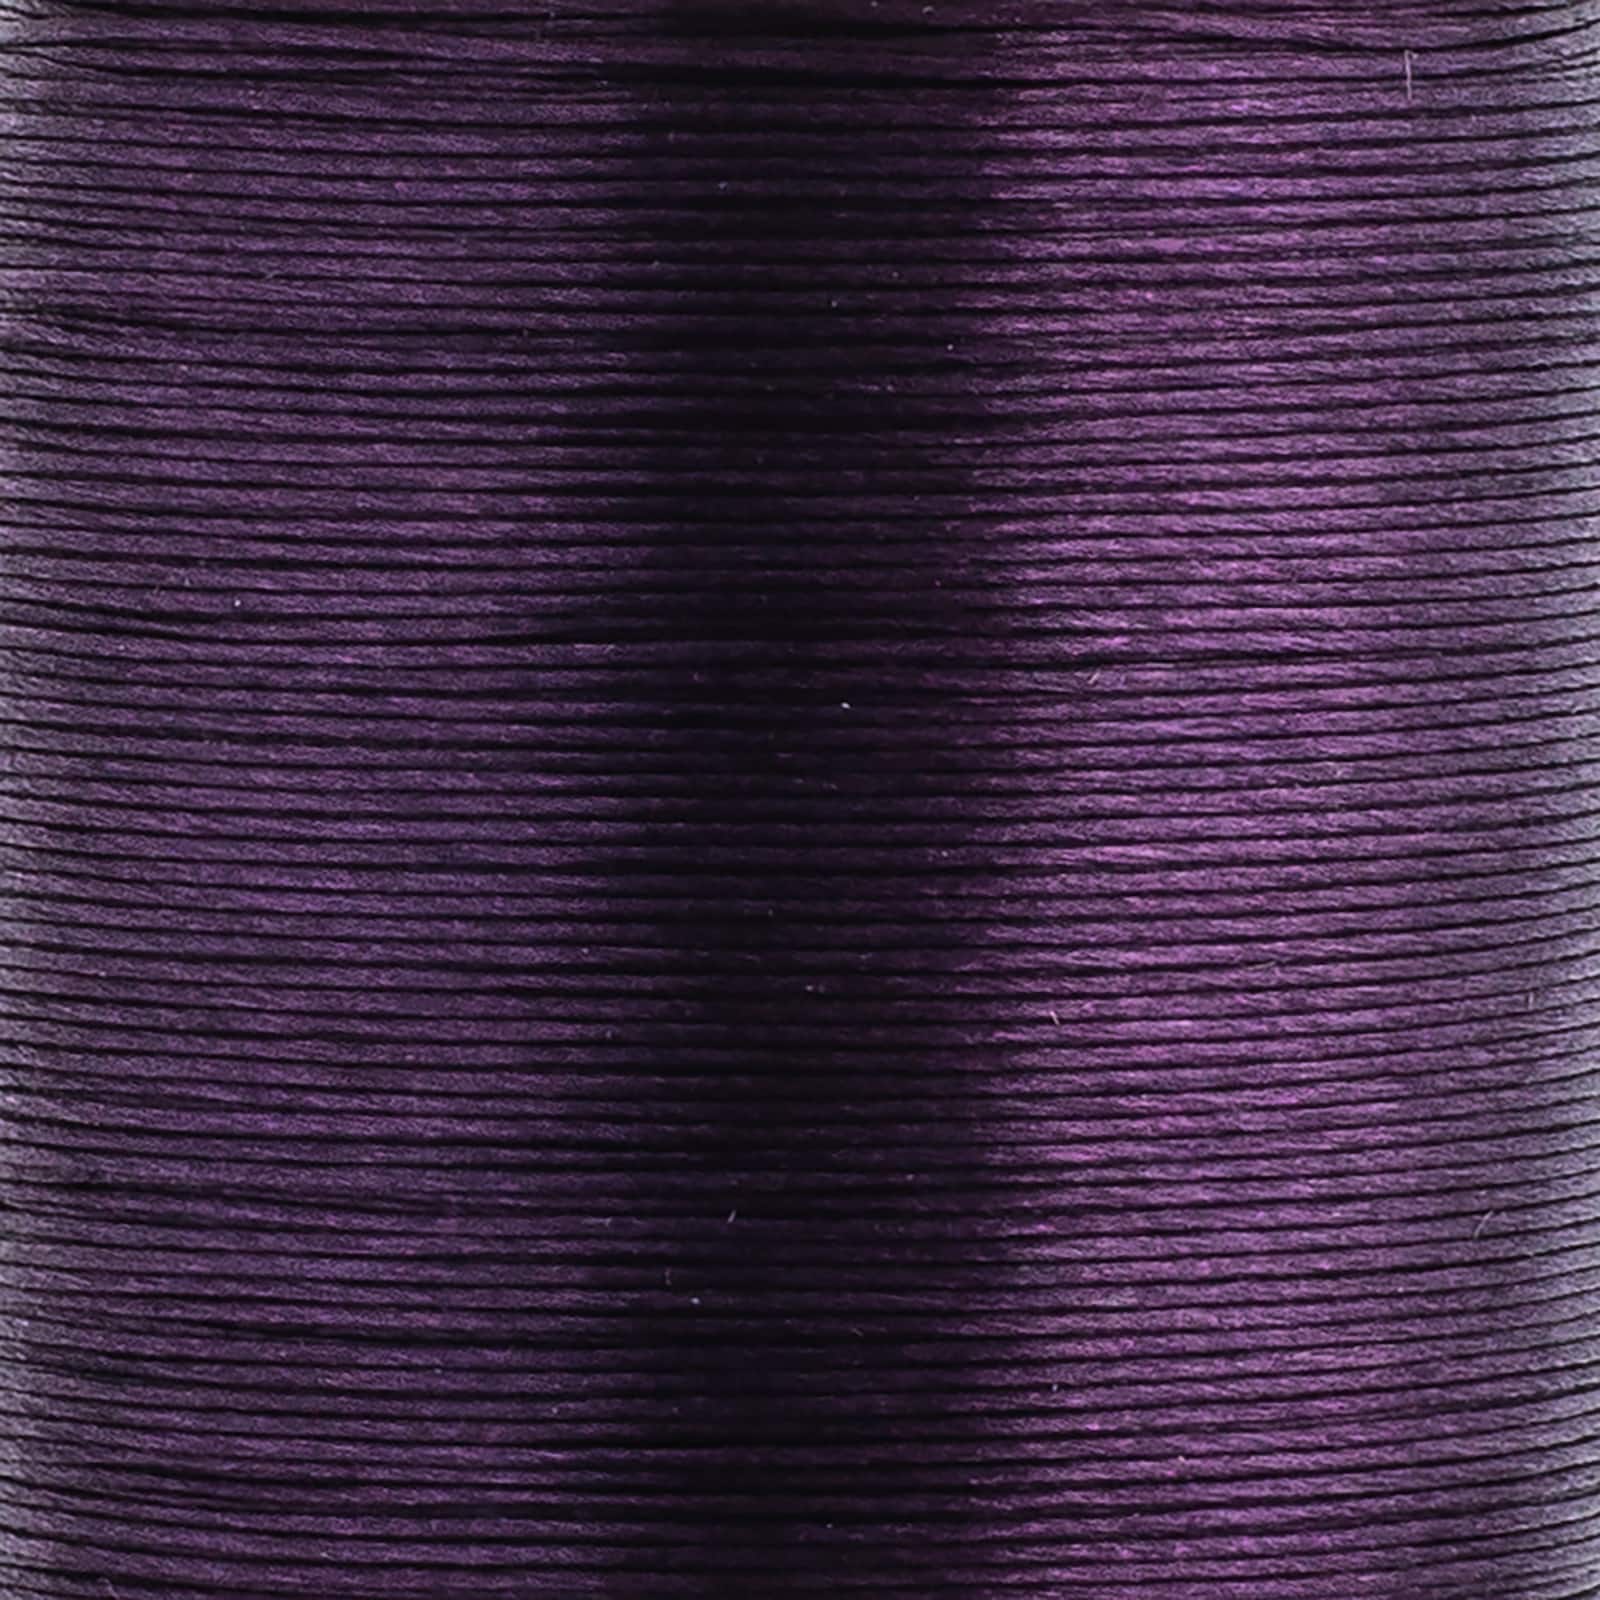 Miyuki® Nylon Beading Thread, 50m